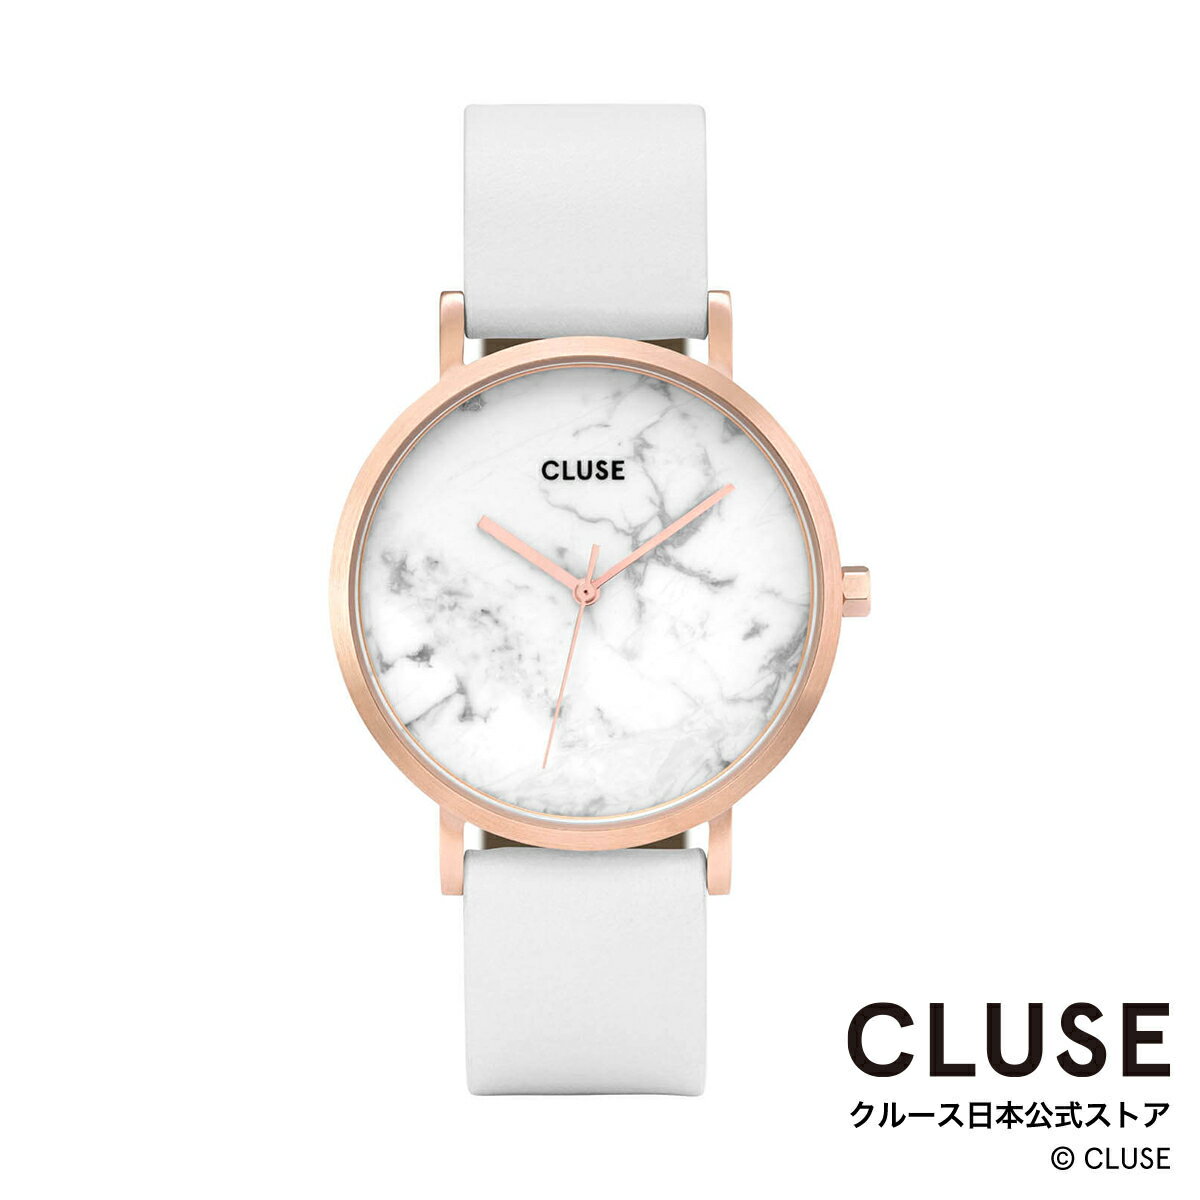 クルース ビジネス腕時計 レディース クルース CLUSE 日本公式ストア ラ・ロッシュ ローズゴールド ホワイト マーブル ホワイト レディース 女性 腕時計 時計 防水 クォーツ